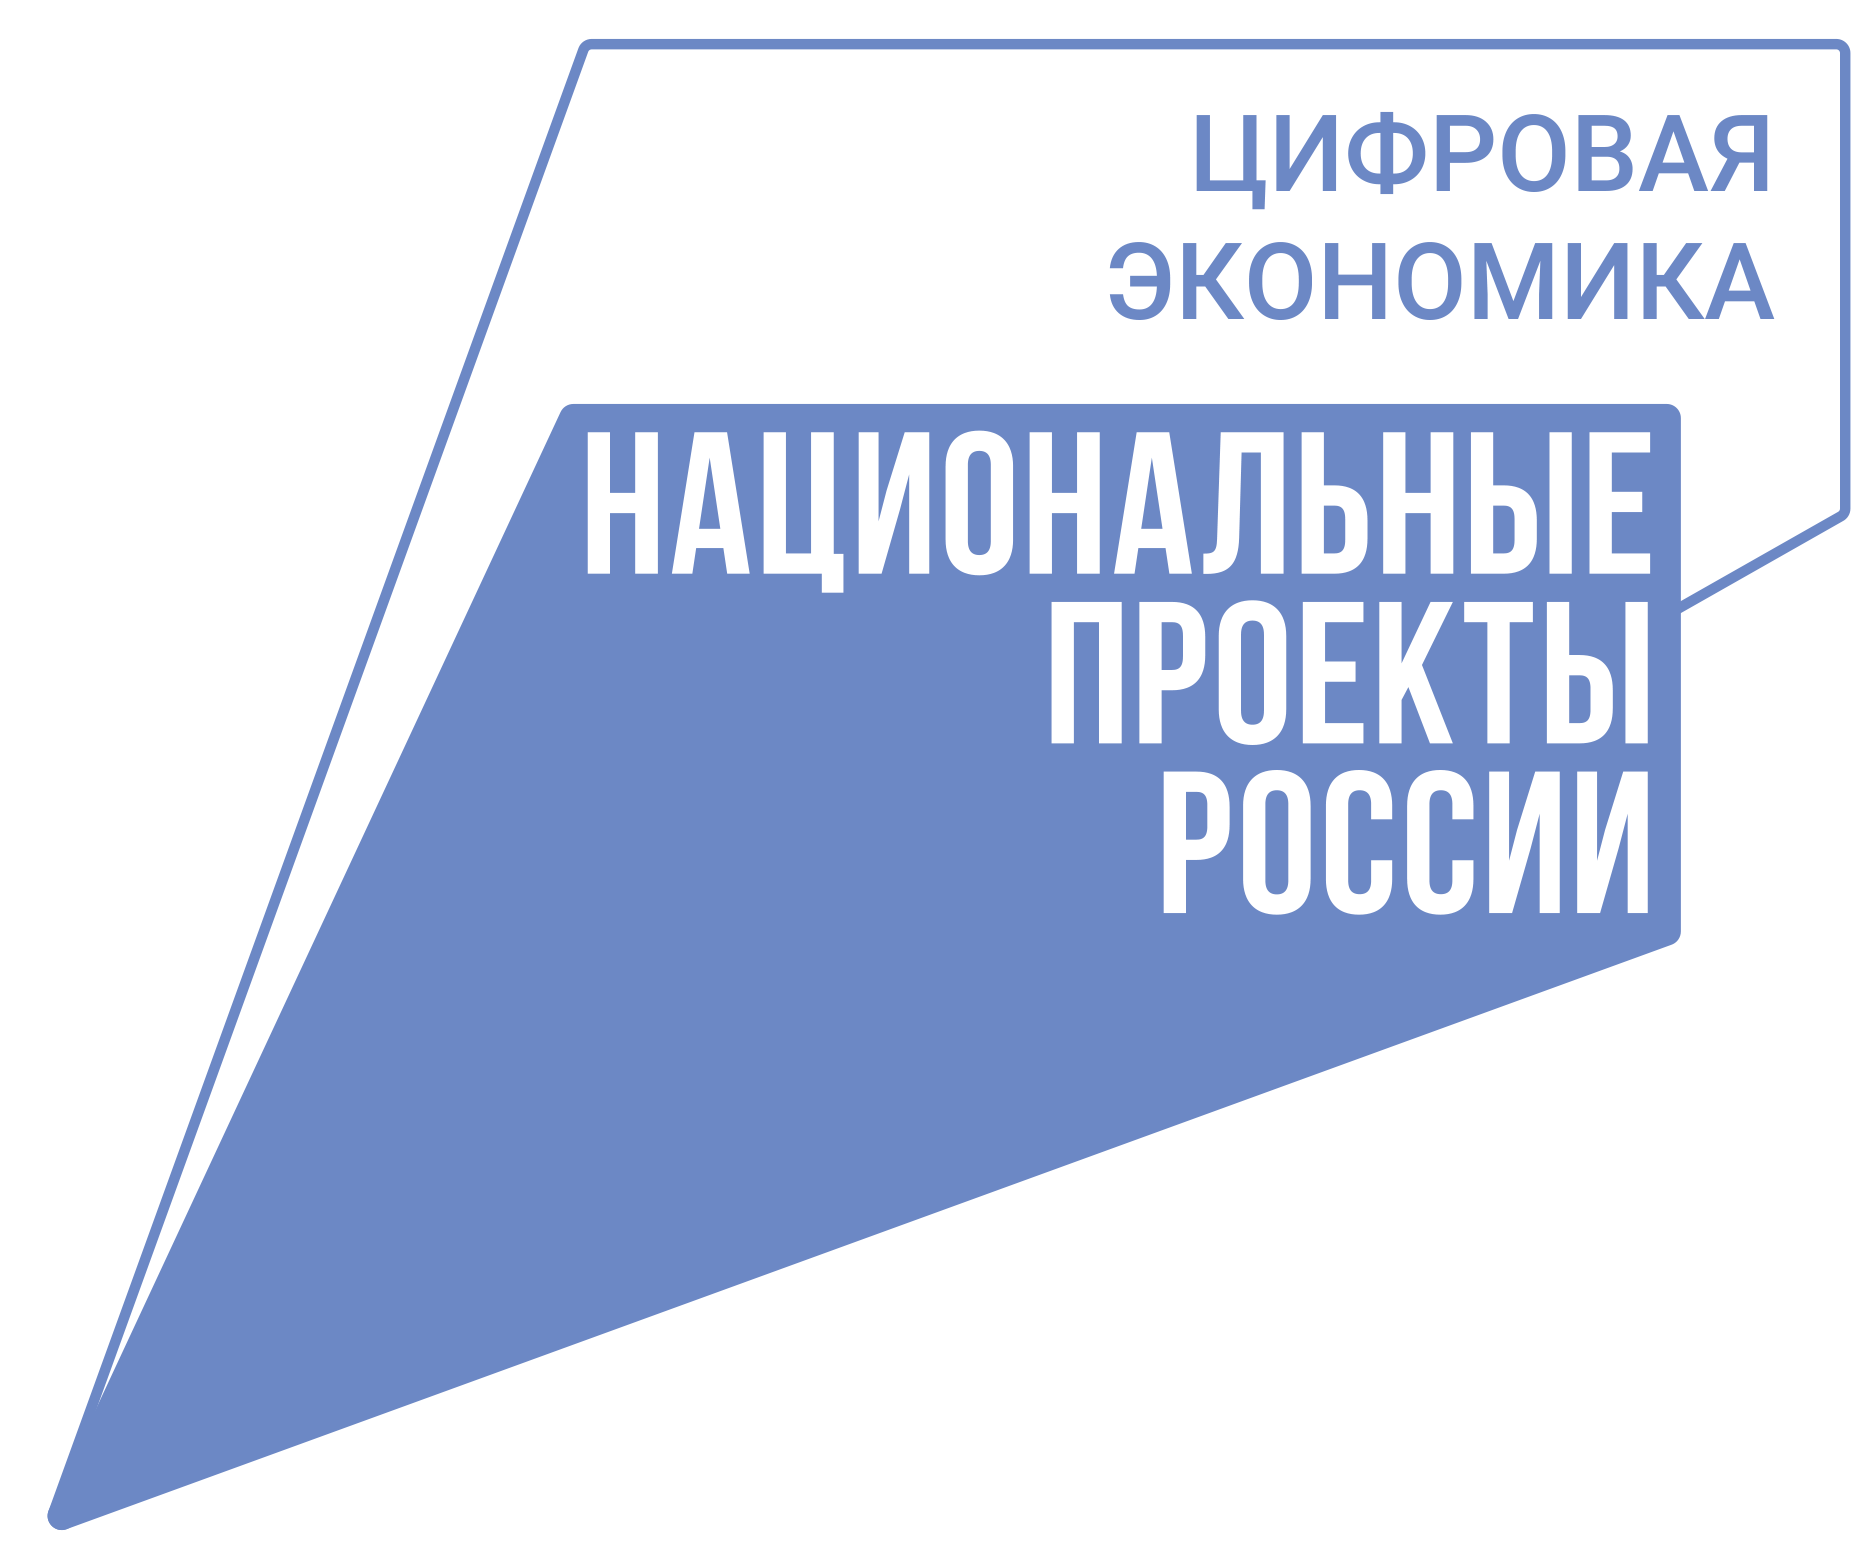 Обучающее мероприятие по системе ЕСЭД Ульяновской области.